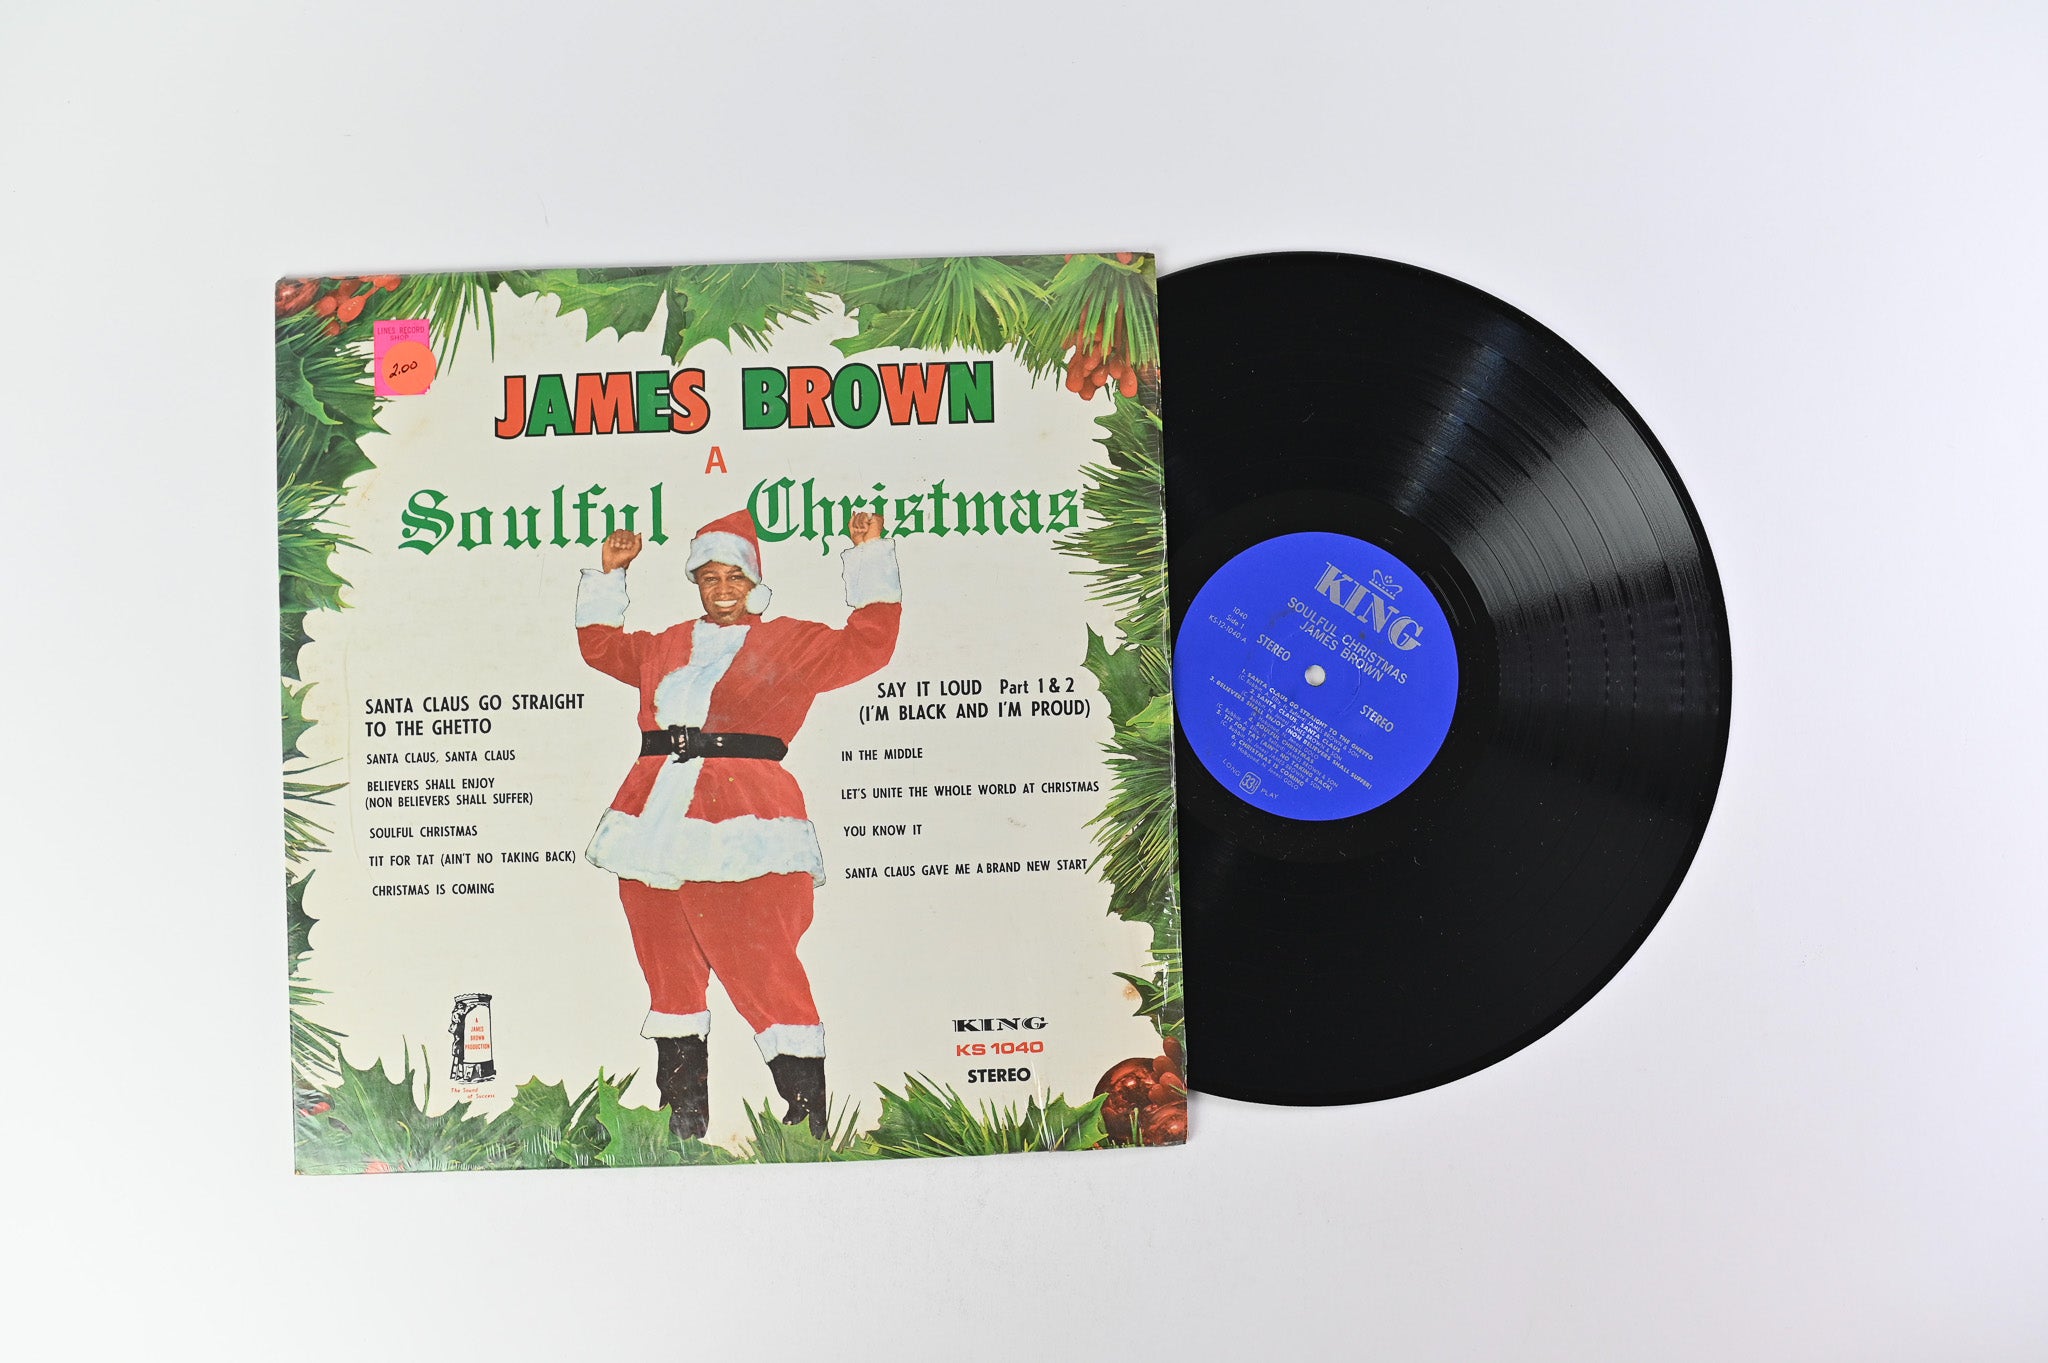 James Brown - A Soulful Christmas on King